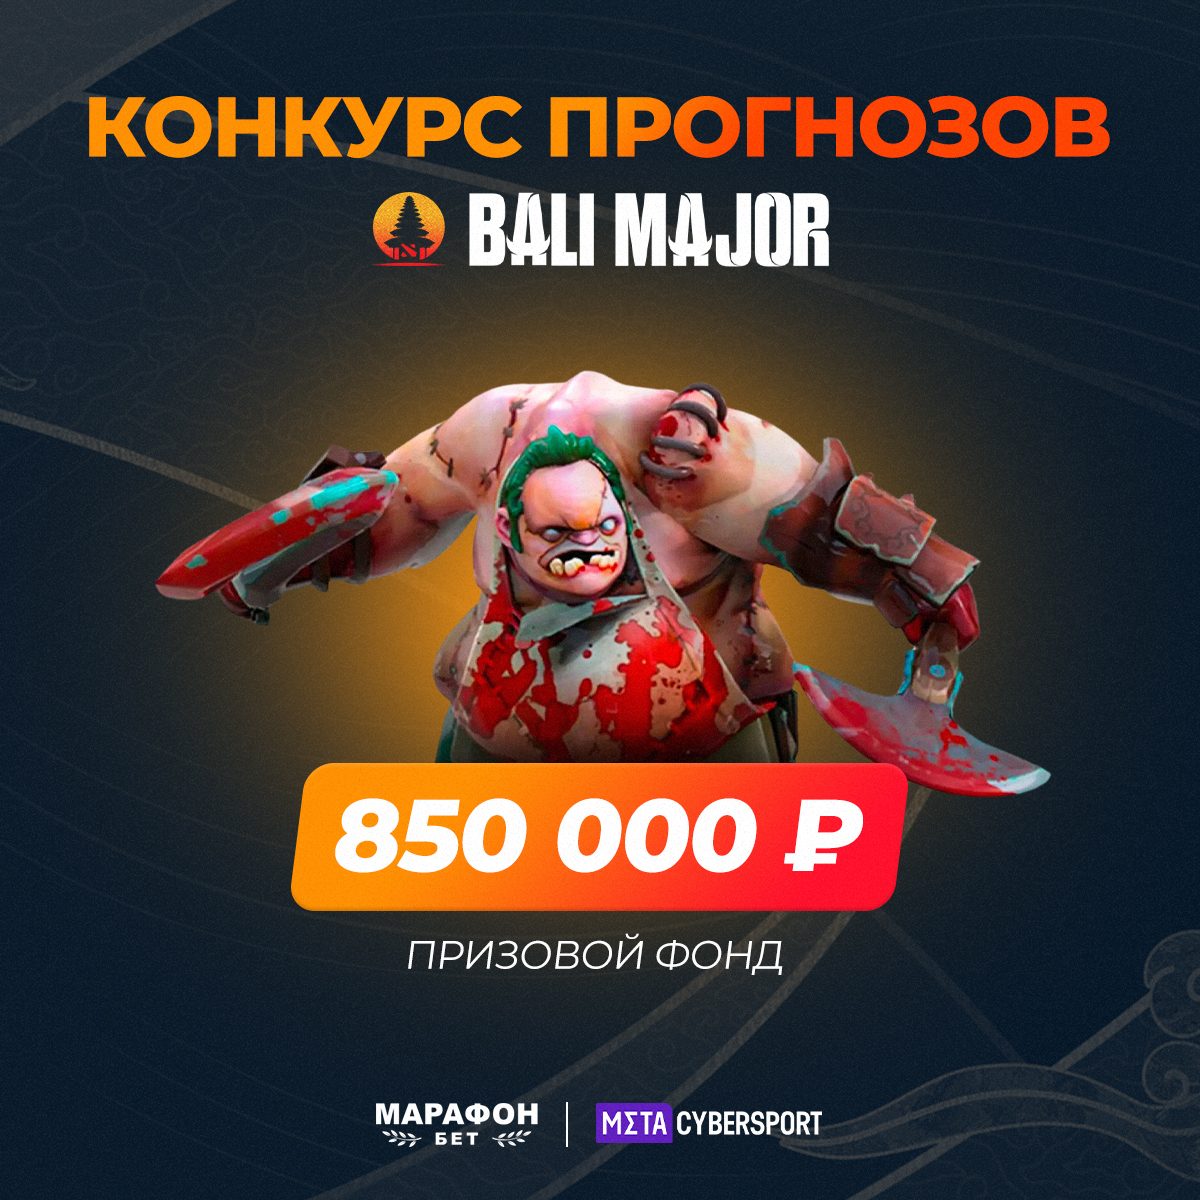 Конкурс к The Bali Major 2023 от Cybersport.Metaratings.ru